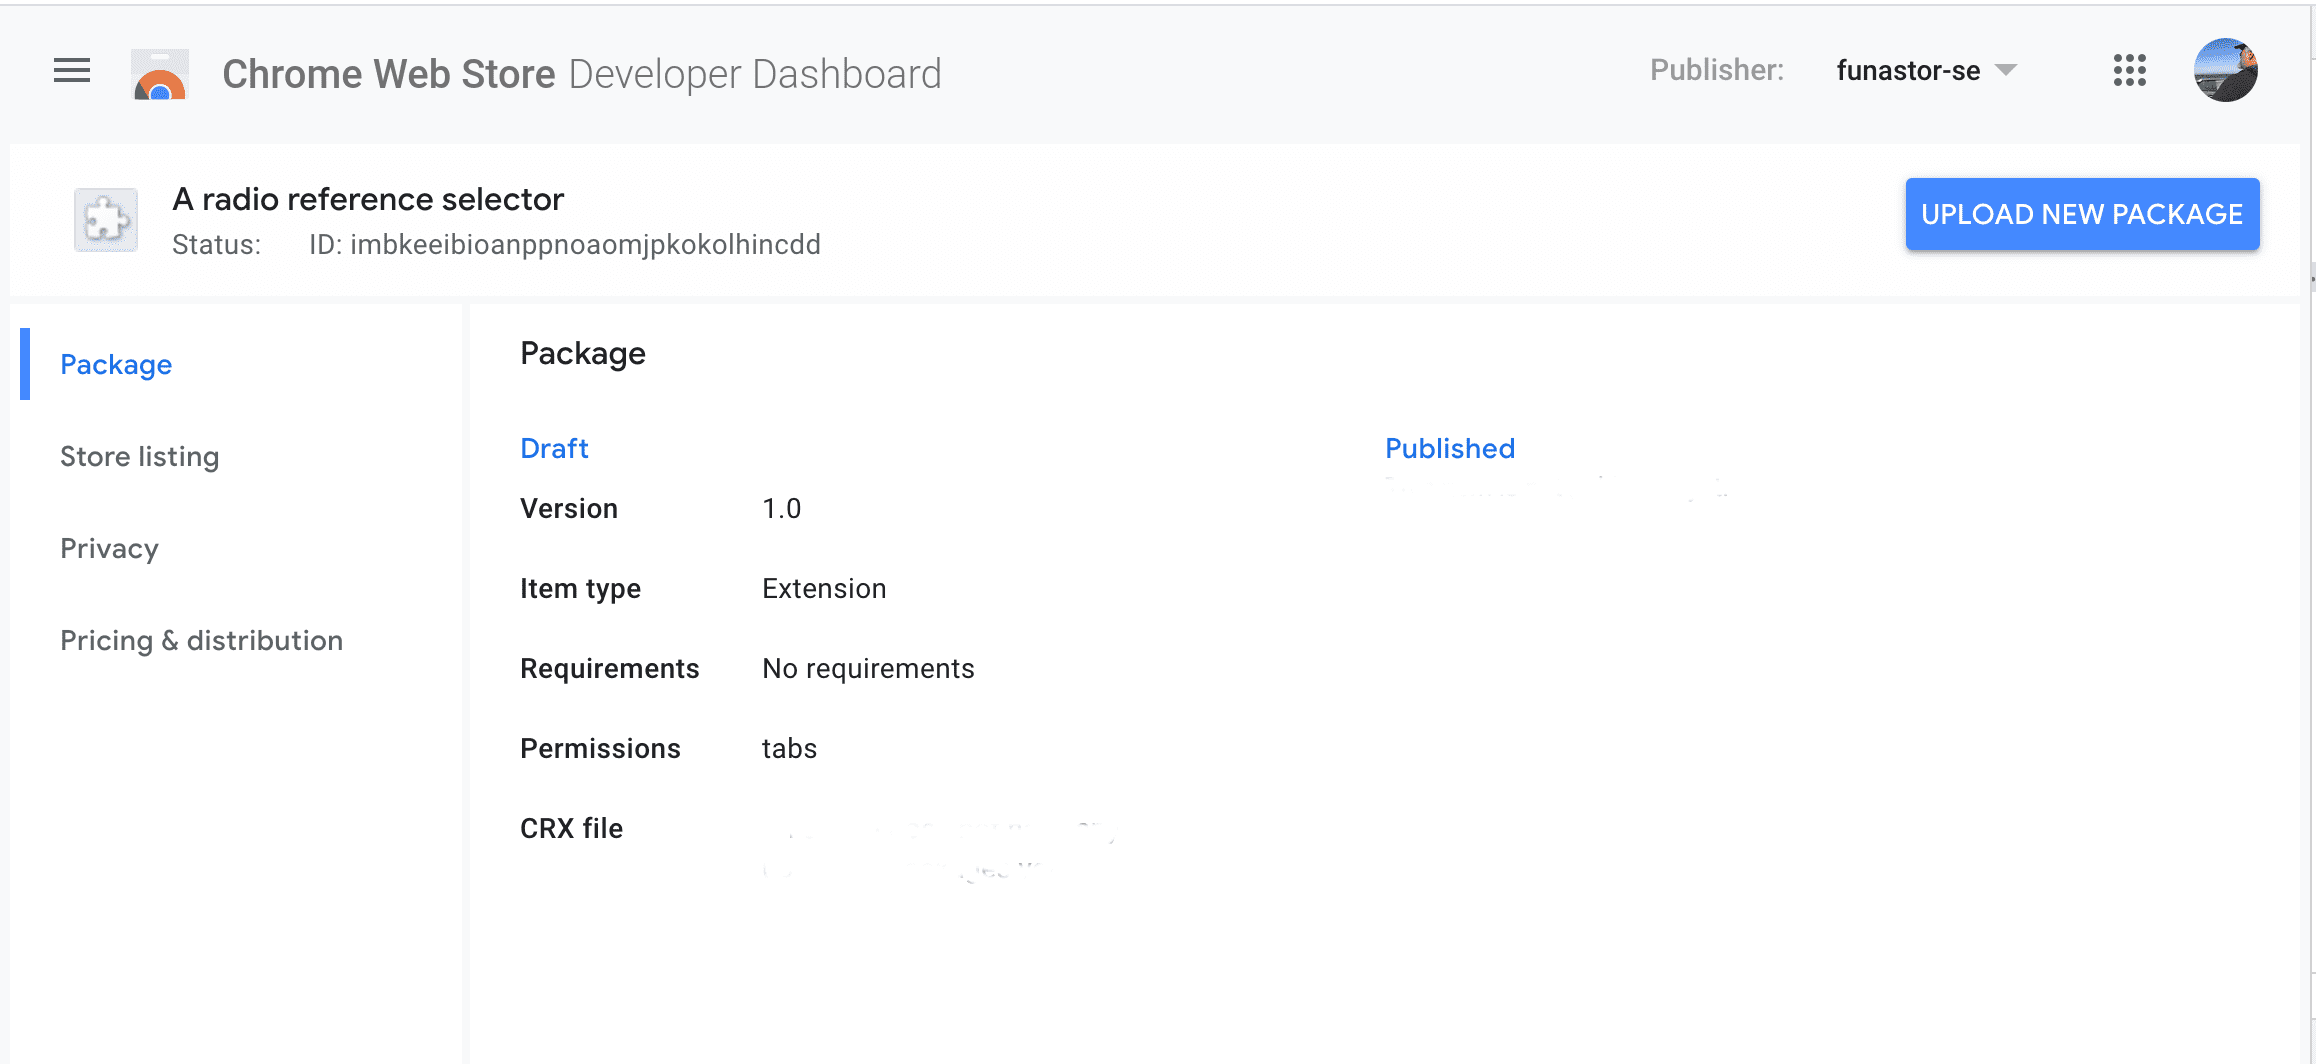 Captura de tela da guia do pacote do painel do desenvolvedor da Chrome Web Store referente a um item